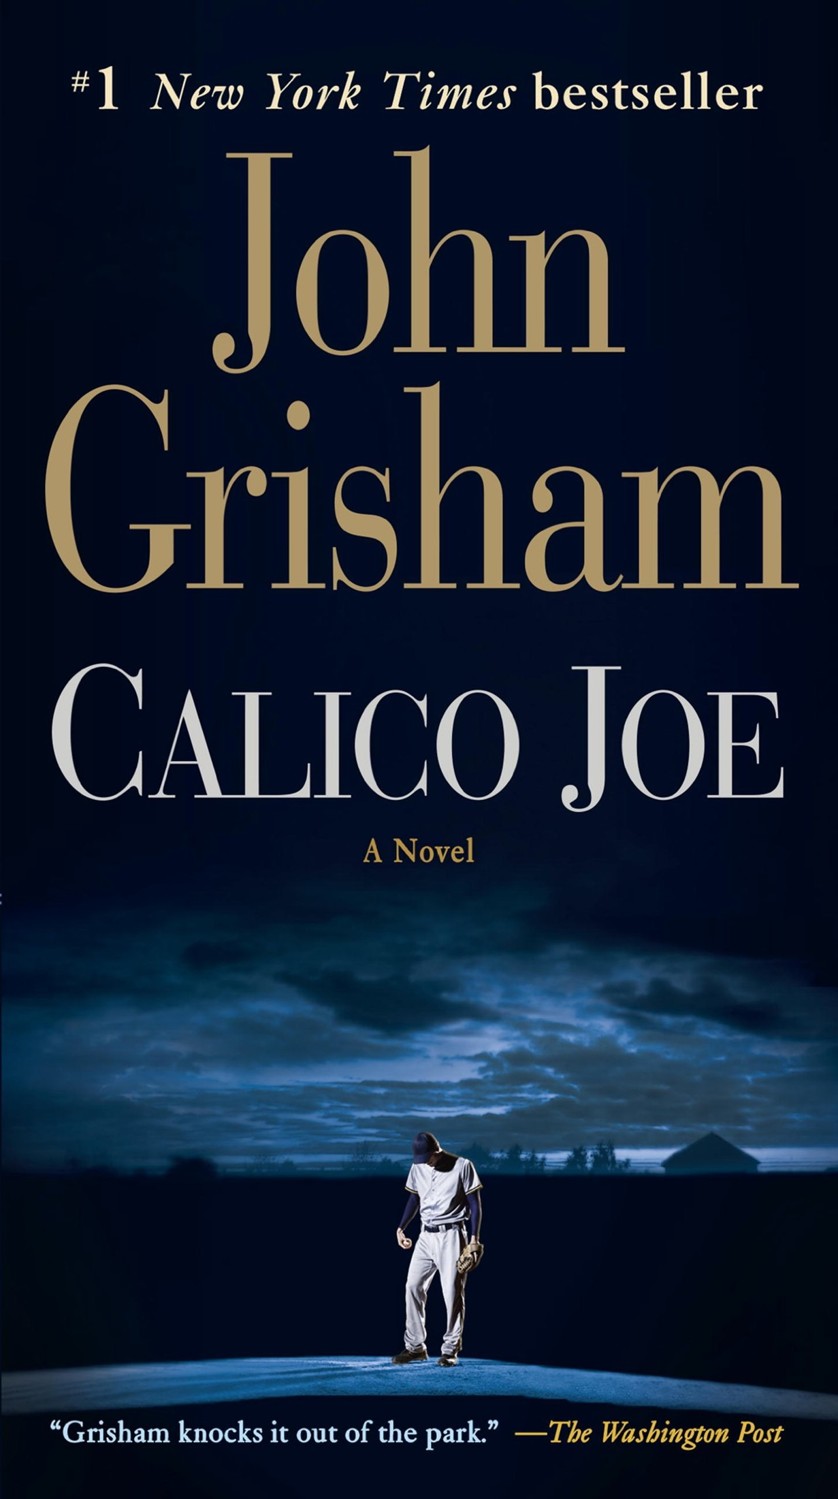 Calico Joe: A Novel